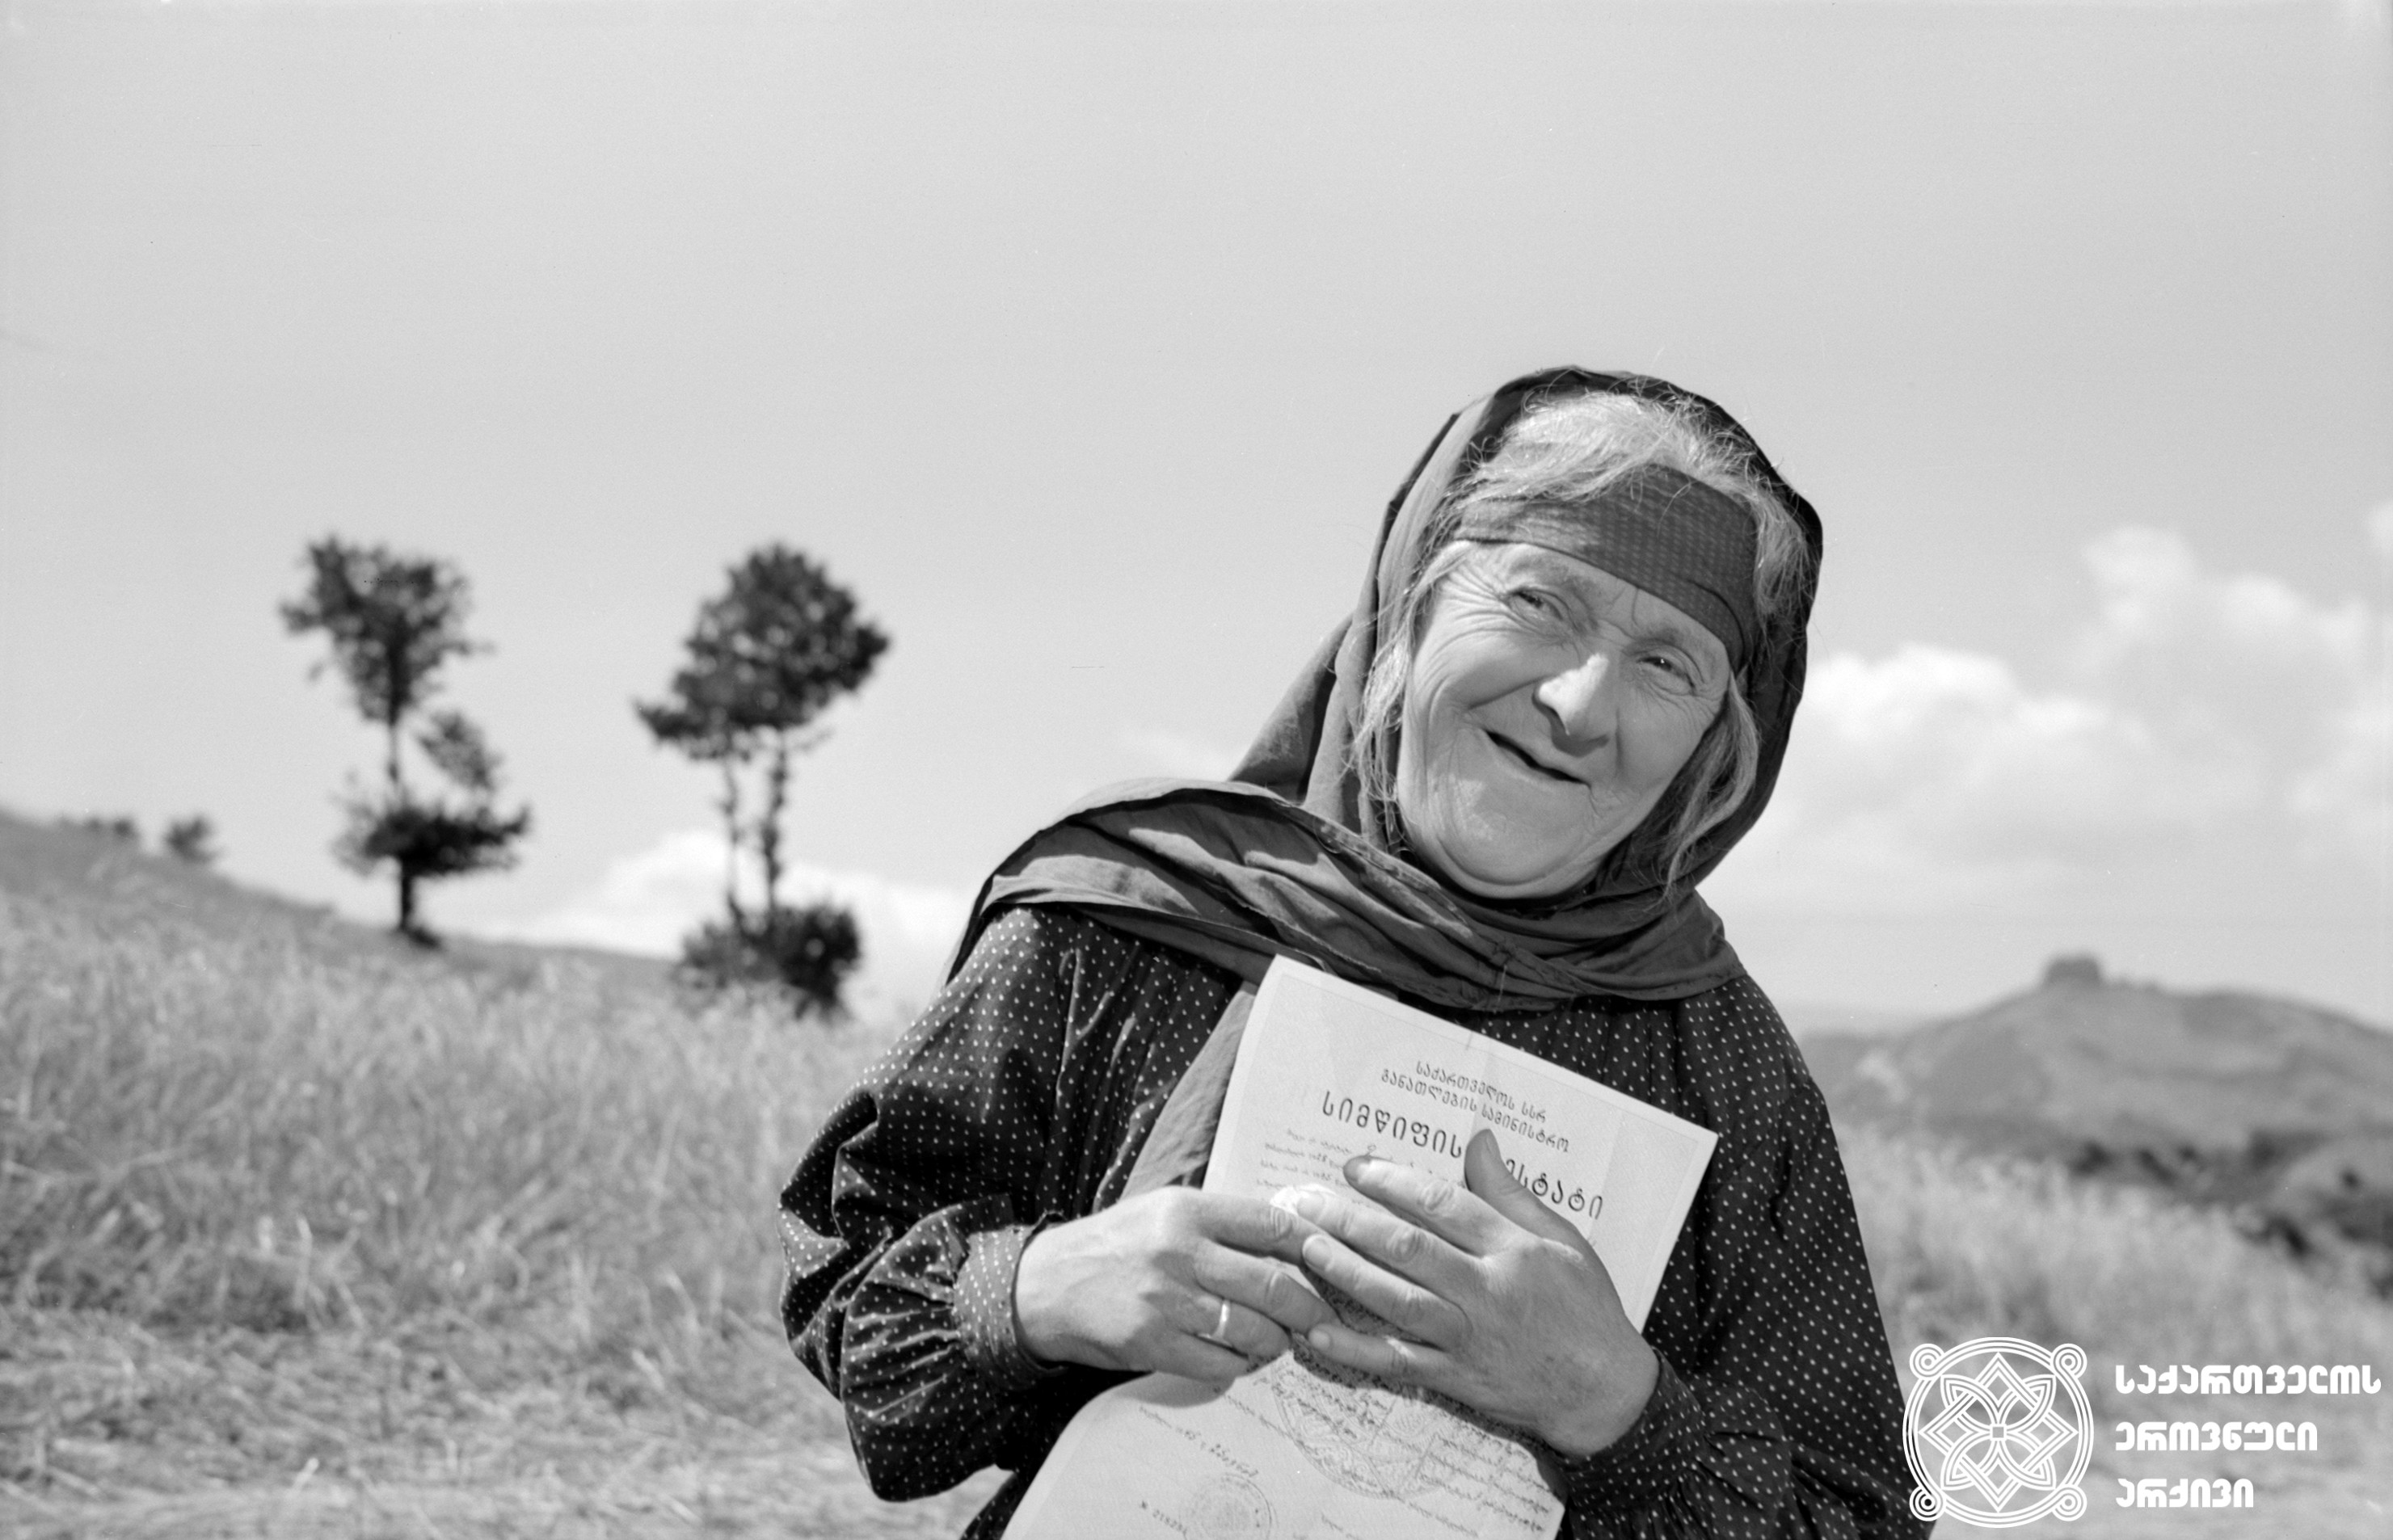 ოლღა ბებია - სესილია თაყაიშვილი. მხატვრული ფილმი „მე, ბებია, ილიკო და ილარიონი“. 
კინოსტუდია „ქართული ფილმი“, რეჟისორი - თენგიზ აბულაძე. 
1962 წელი. 
<br>
Grandmother Olgha – Sesilia Takaishvili. Feature film “Me, bebia, Iliko da Ilarioni” (“I, Grandmother, Iliko and Illarion”). 
Film Studio “Georgian Film”, Director – Tengiz Abuladze. 1962